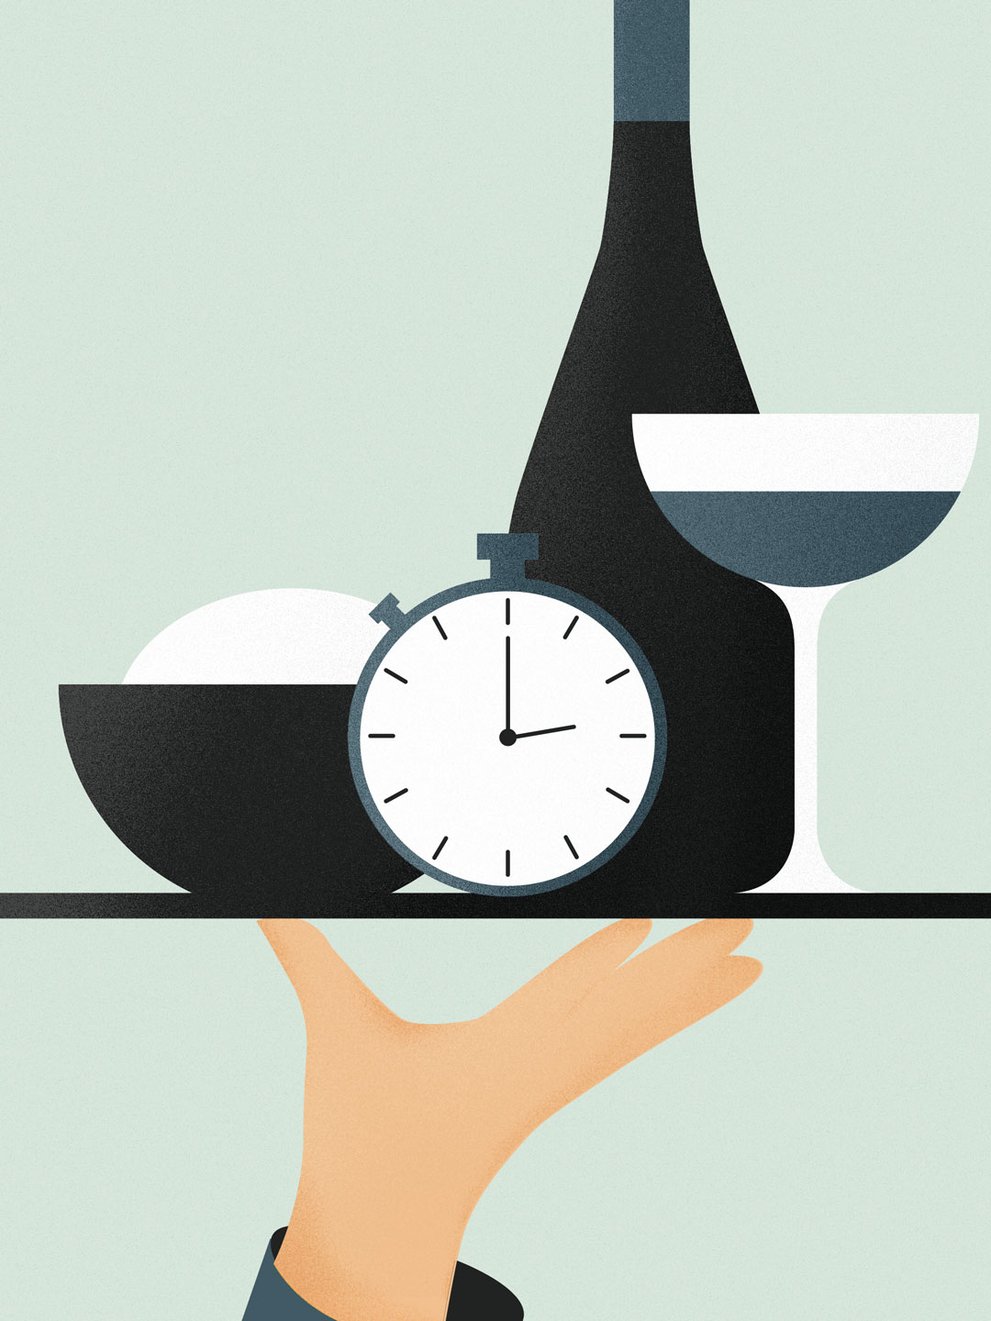 4 Ways to Shorten Wait Times at Your Restaurant